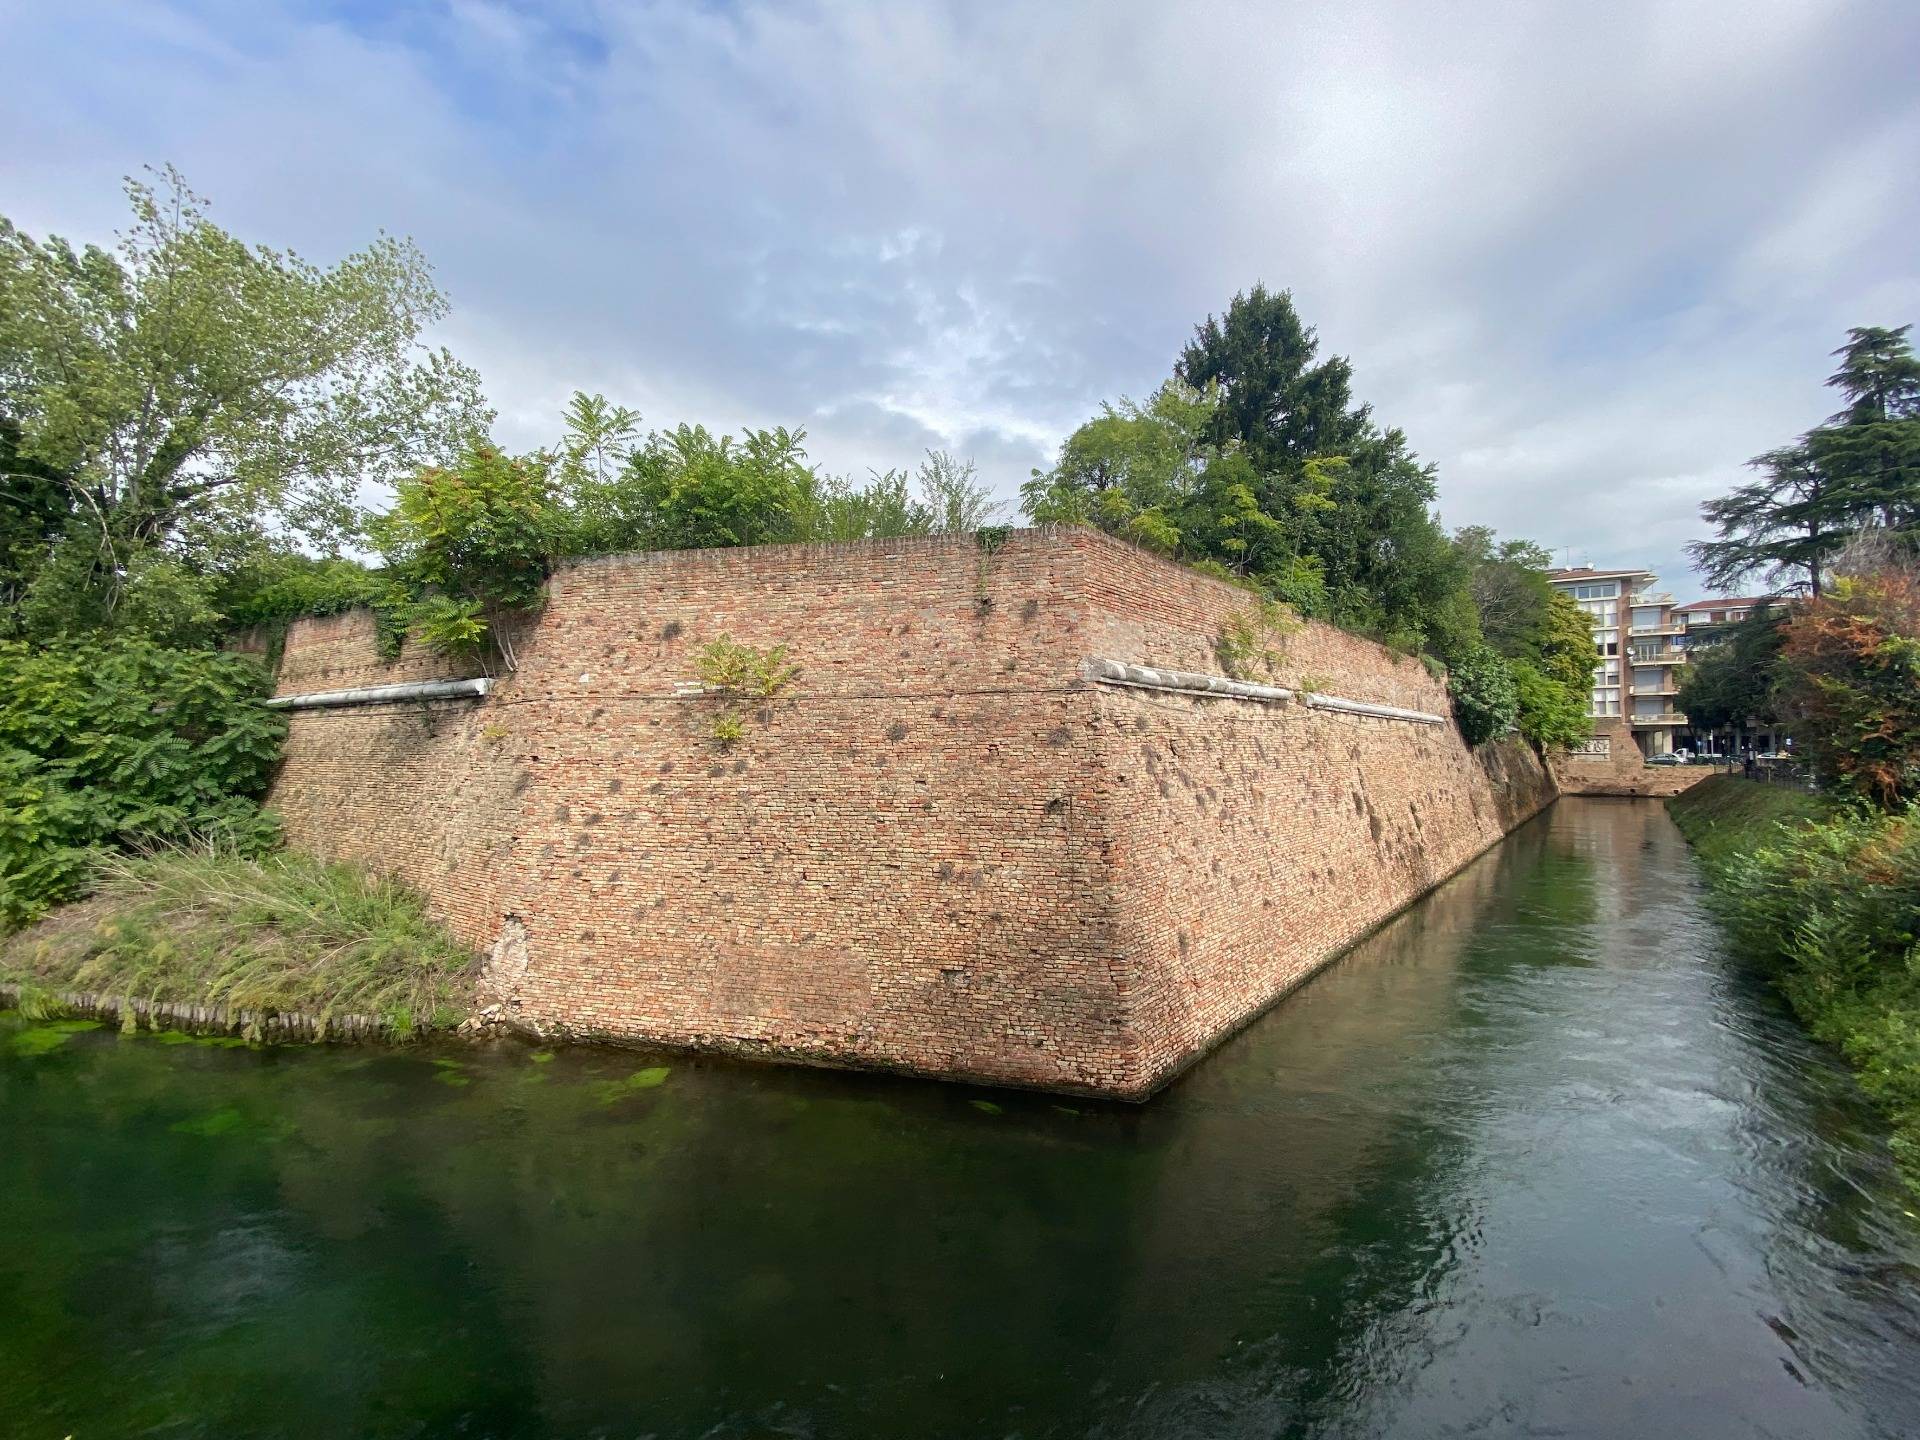 Walls of Treviso